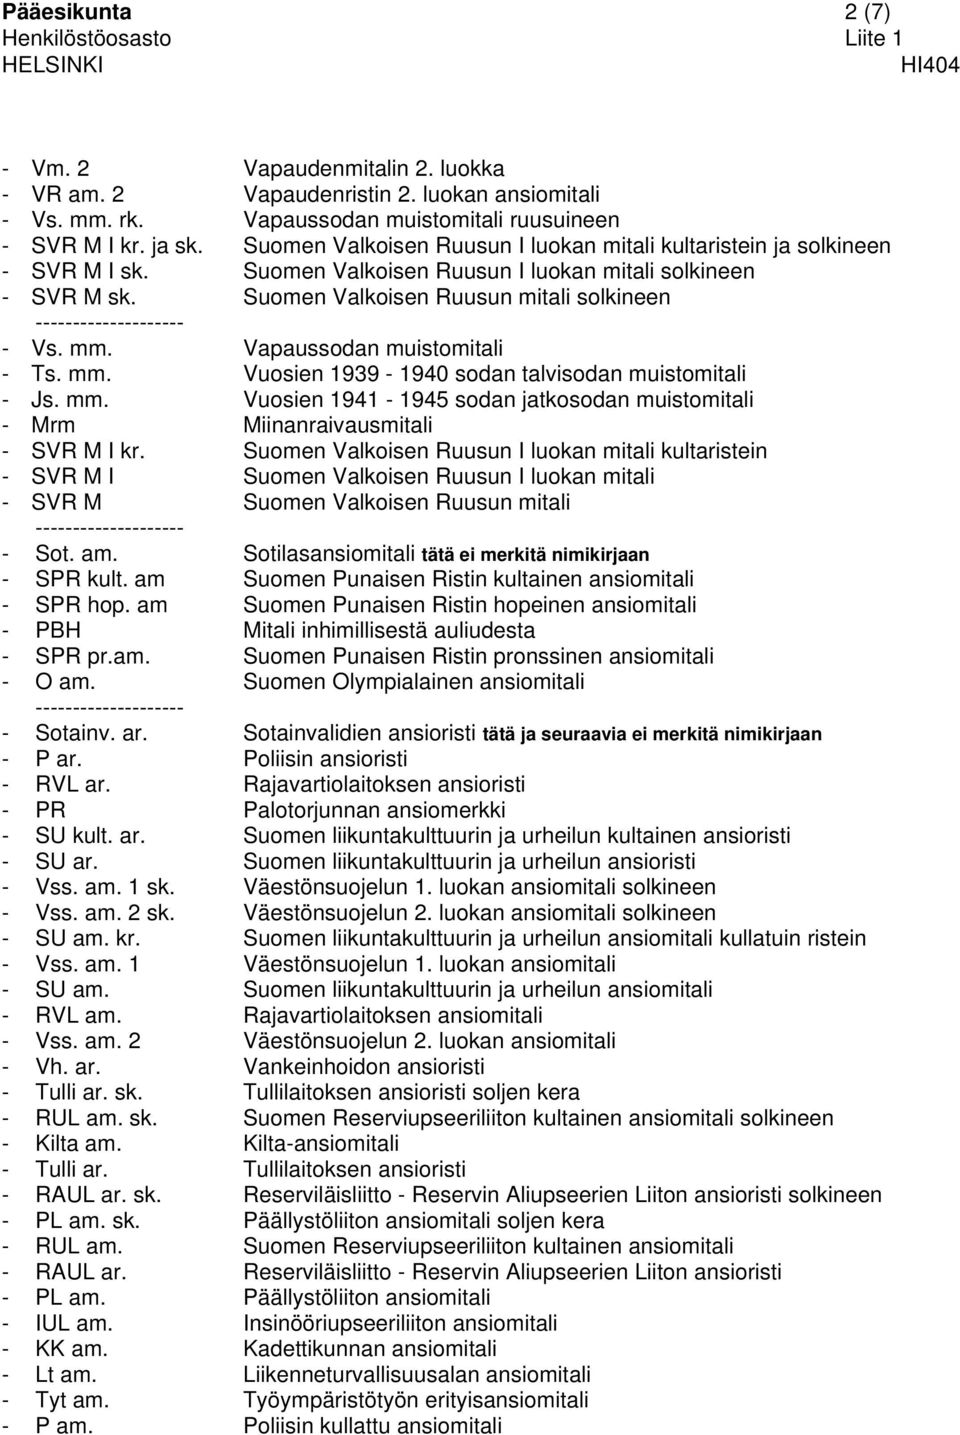 Suomen Valkoisen Ruusun mitali solkineen -------------------- - Vs. mm. Vapaussodan muistomitali - Ts. mm. Vuosien 1939-1940 sodan talvisodan muistomitali - Js. mm. Vuosien 1941-1945 sodan jatkosodan muistomitali - Mrm Miinanraivausmitali - SVR M I kr.